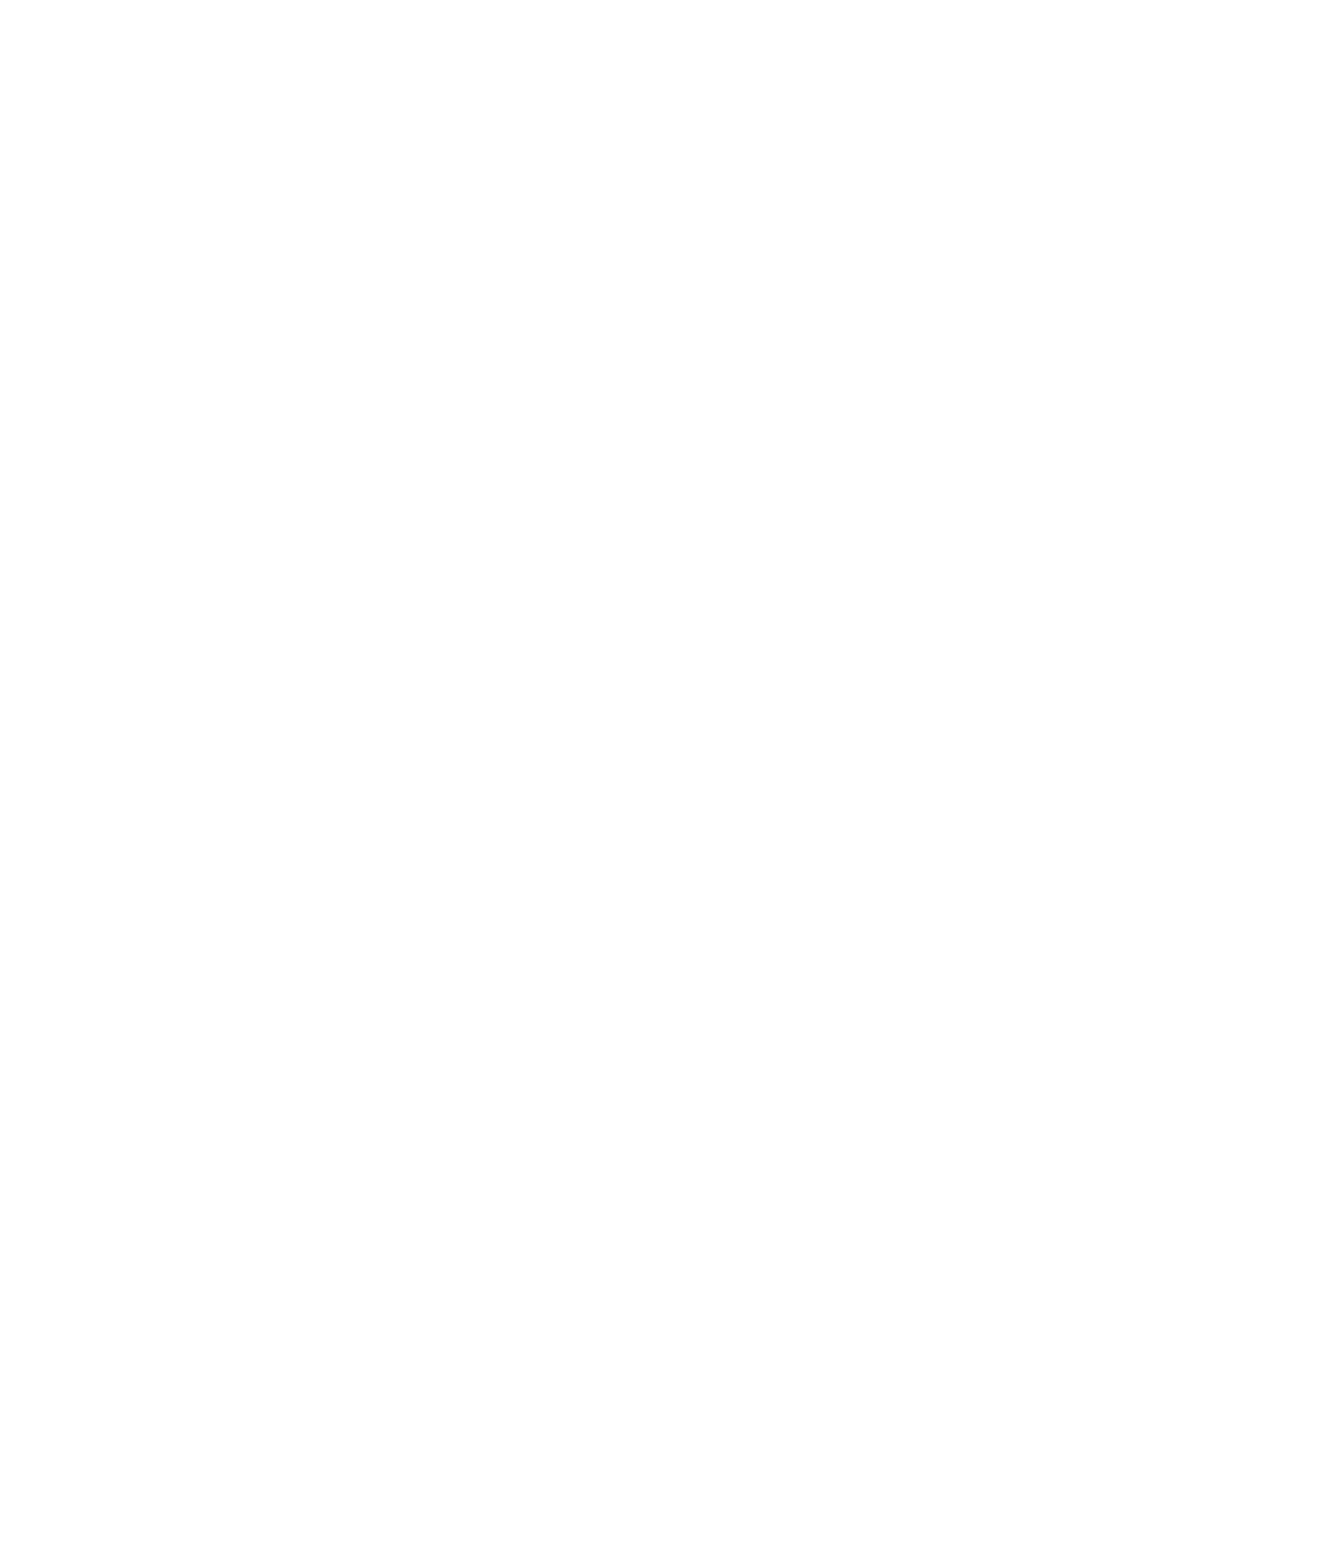 Sonoco logo pour fonds sombres (PNG transparent)